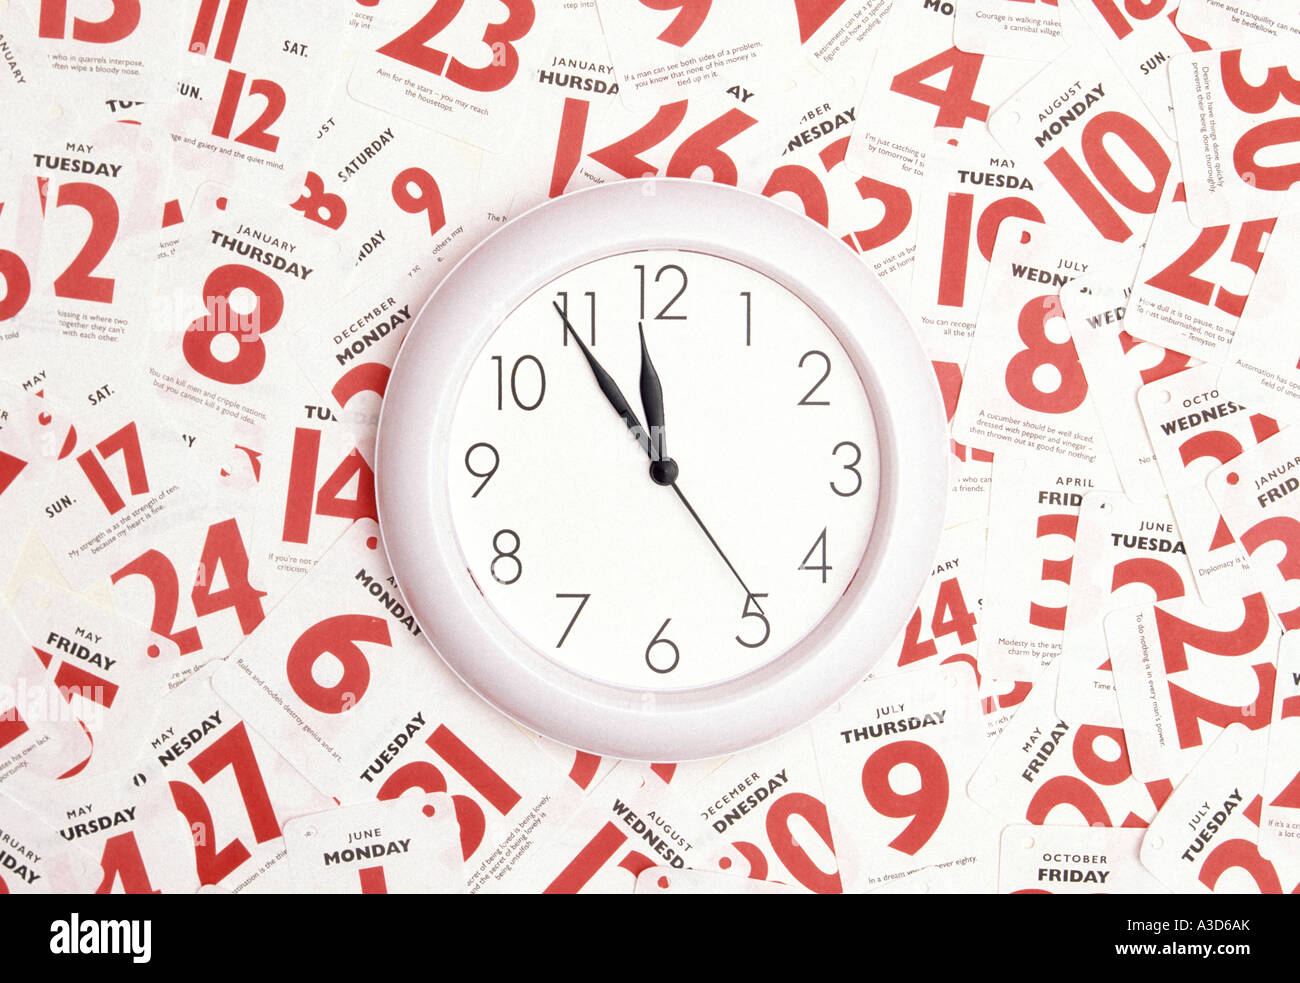 Data e ora calendario appuntamento immagine concettuale utilizzando il quadrante dell'orologio e le date rosse della settimana mese e anno come concetto per le persone che cercano di gestire una vita intensa Foto Stock